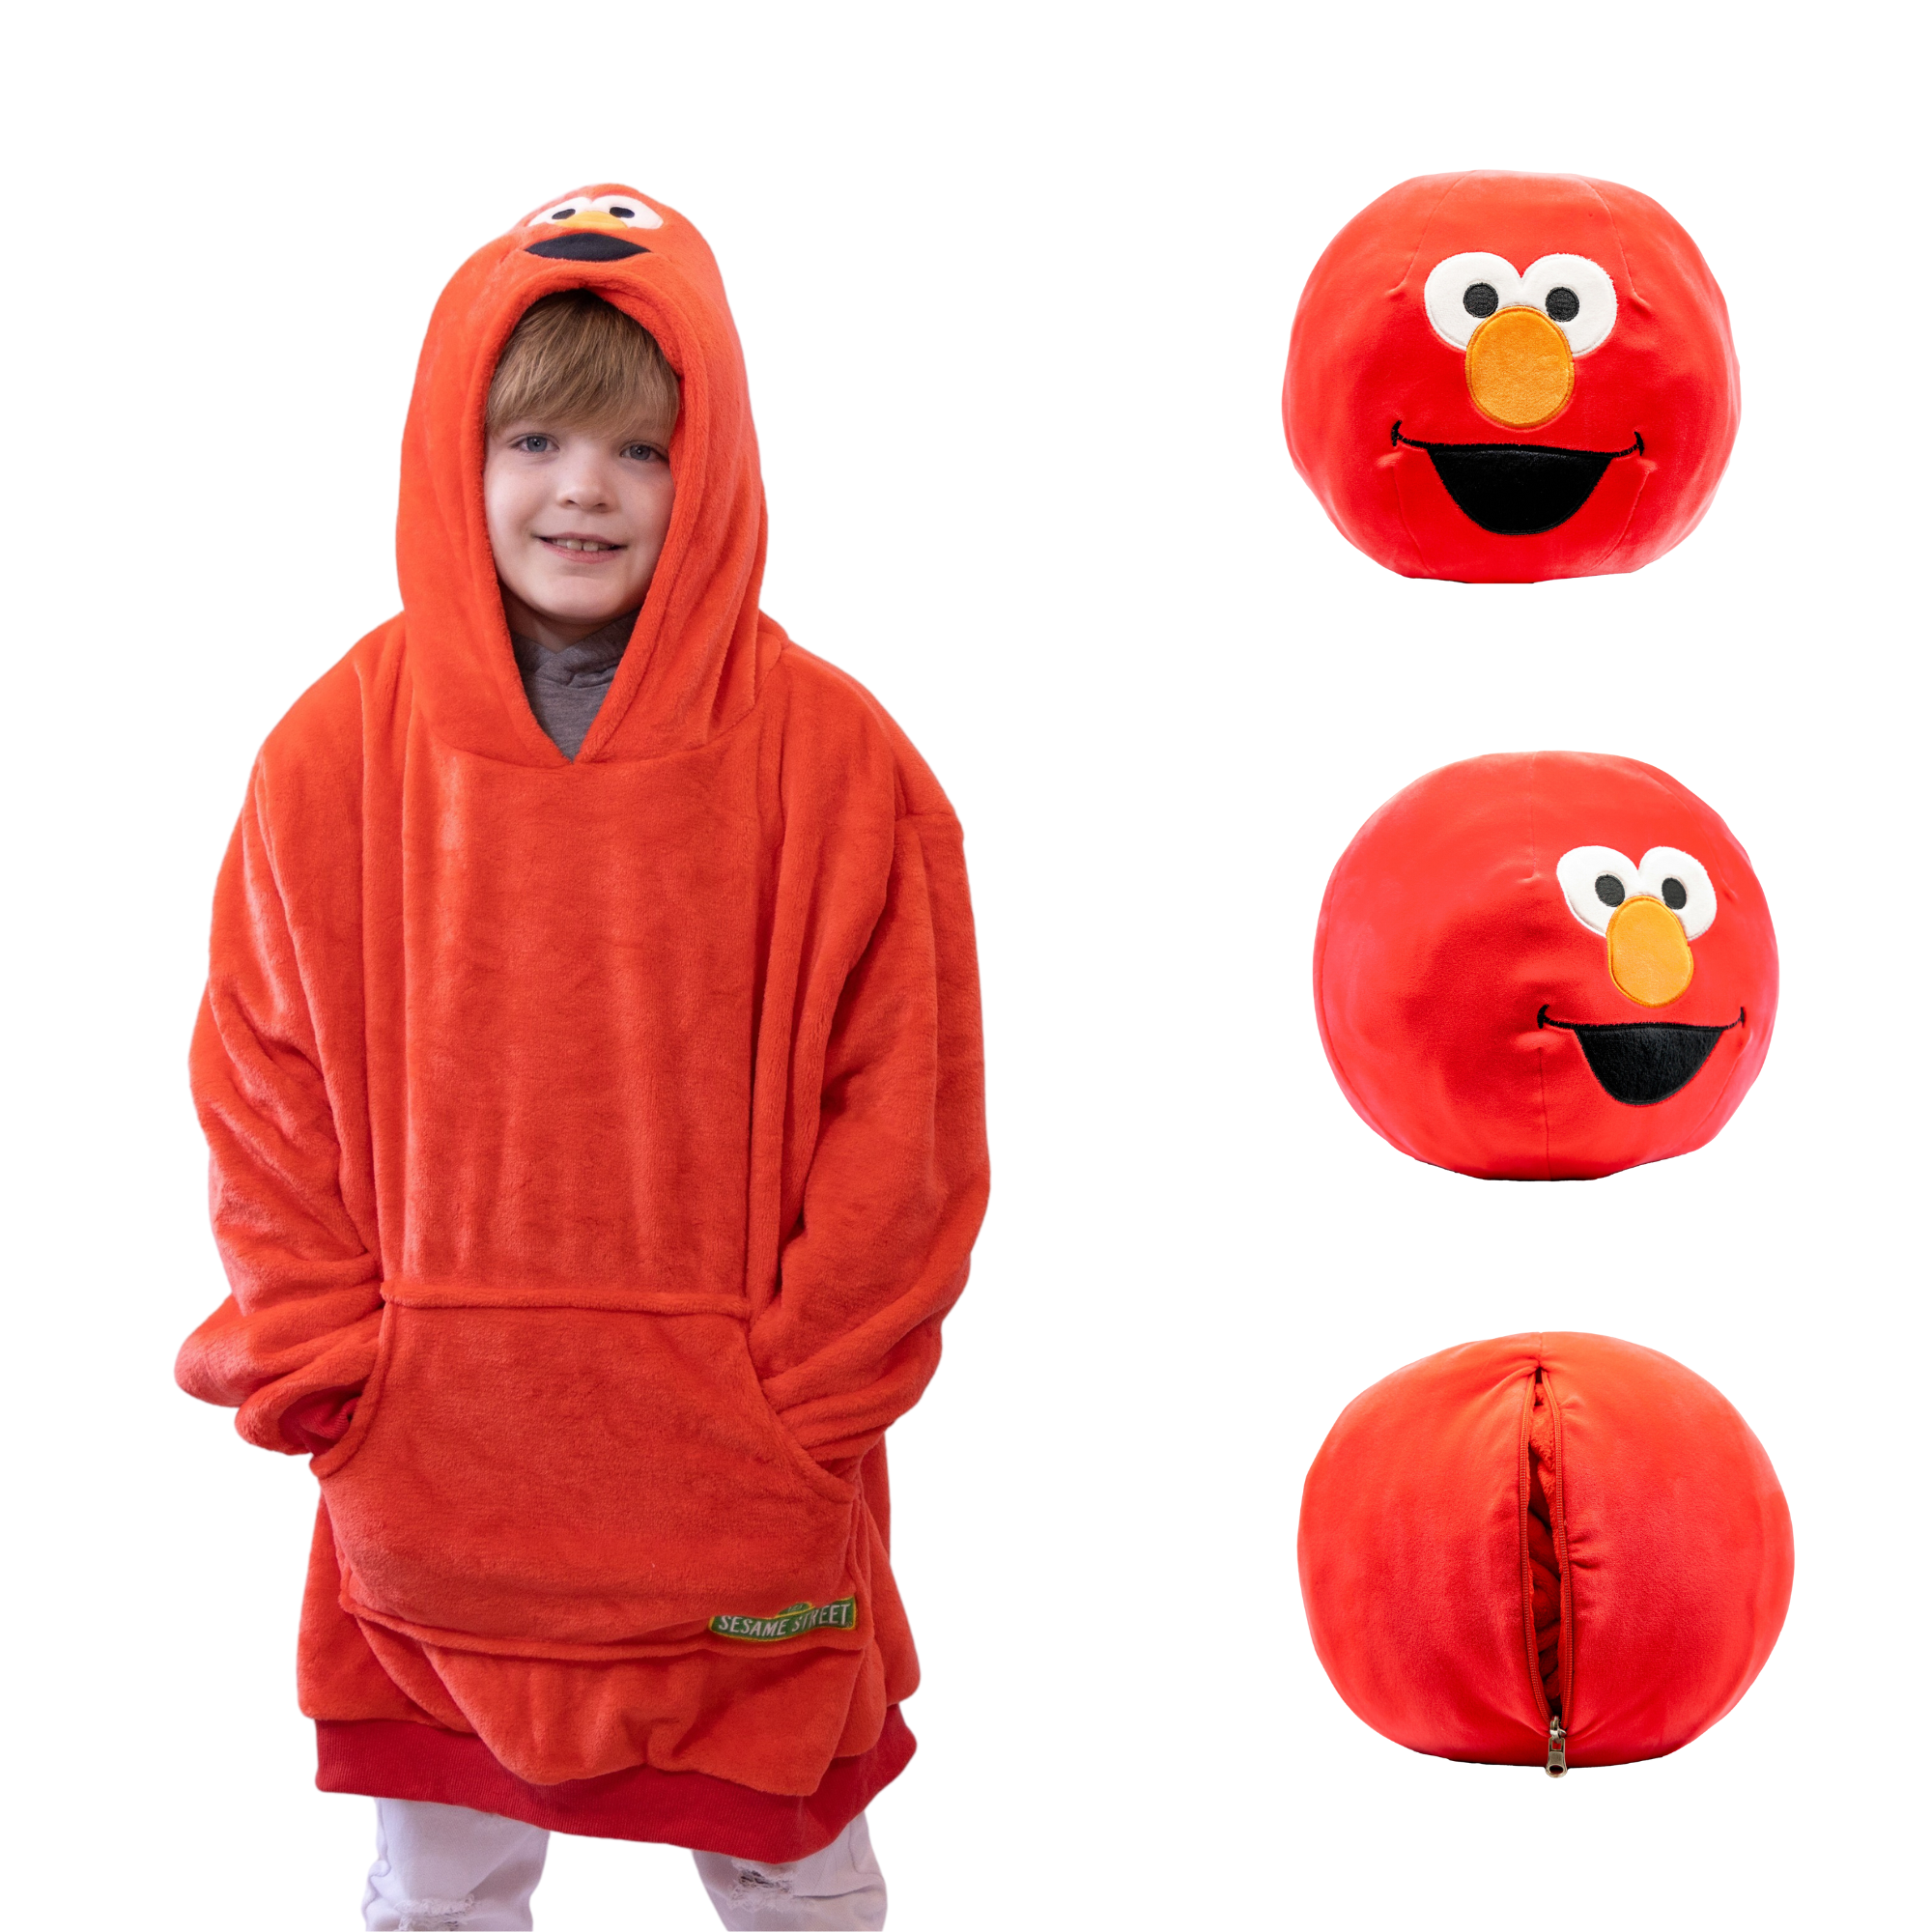 Sesame Street | Elmo Kids Snugible 2-in-1 Blanket Hoodie & Pillow